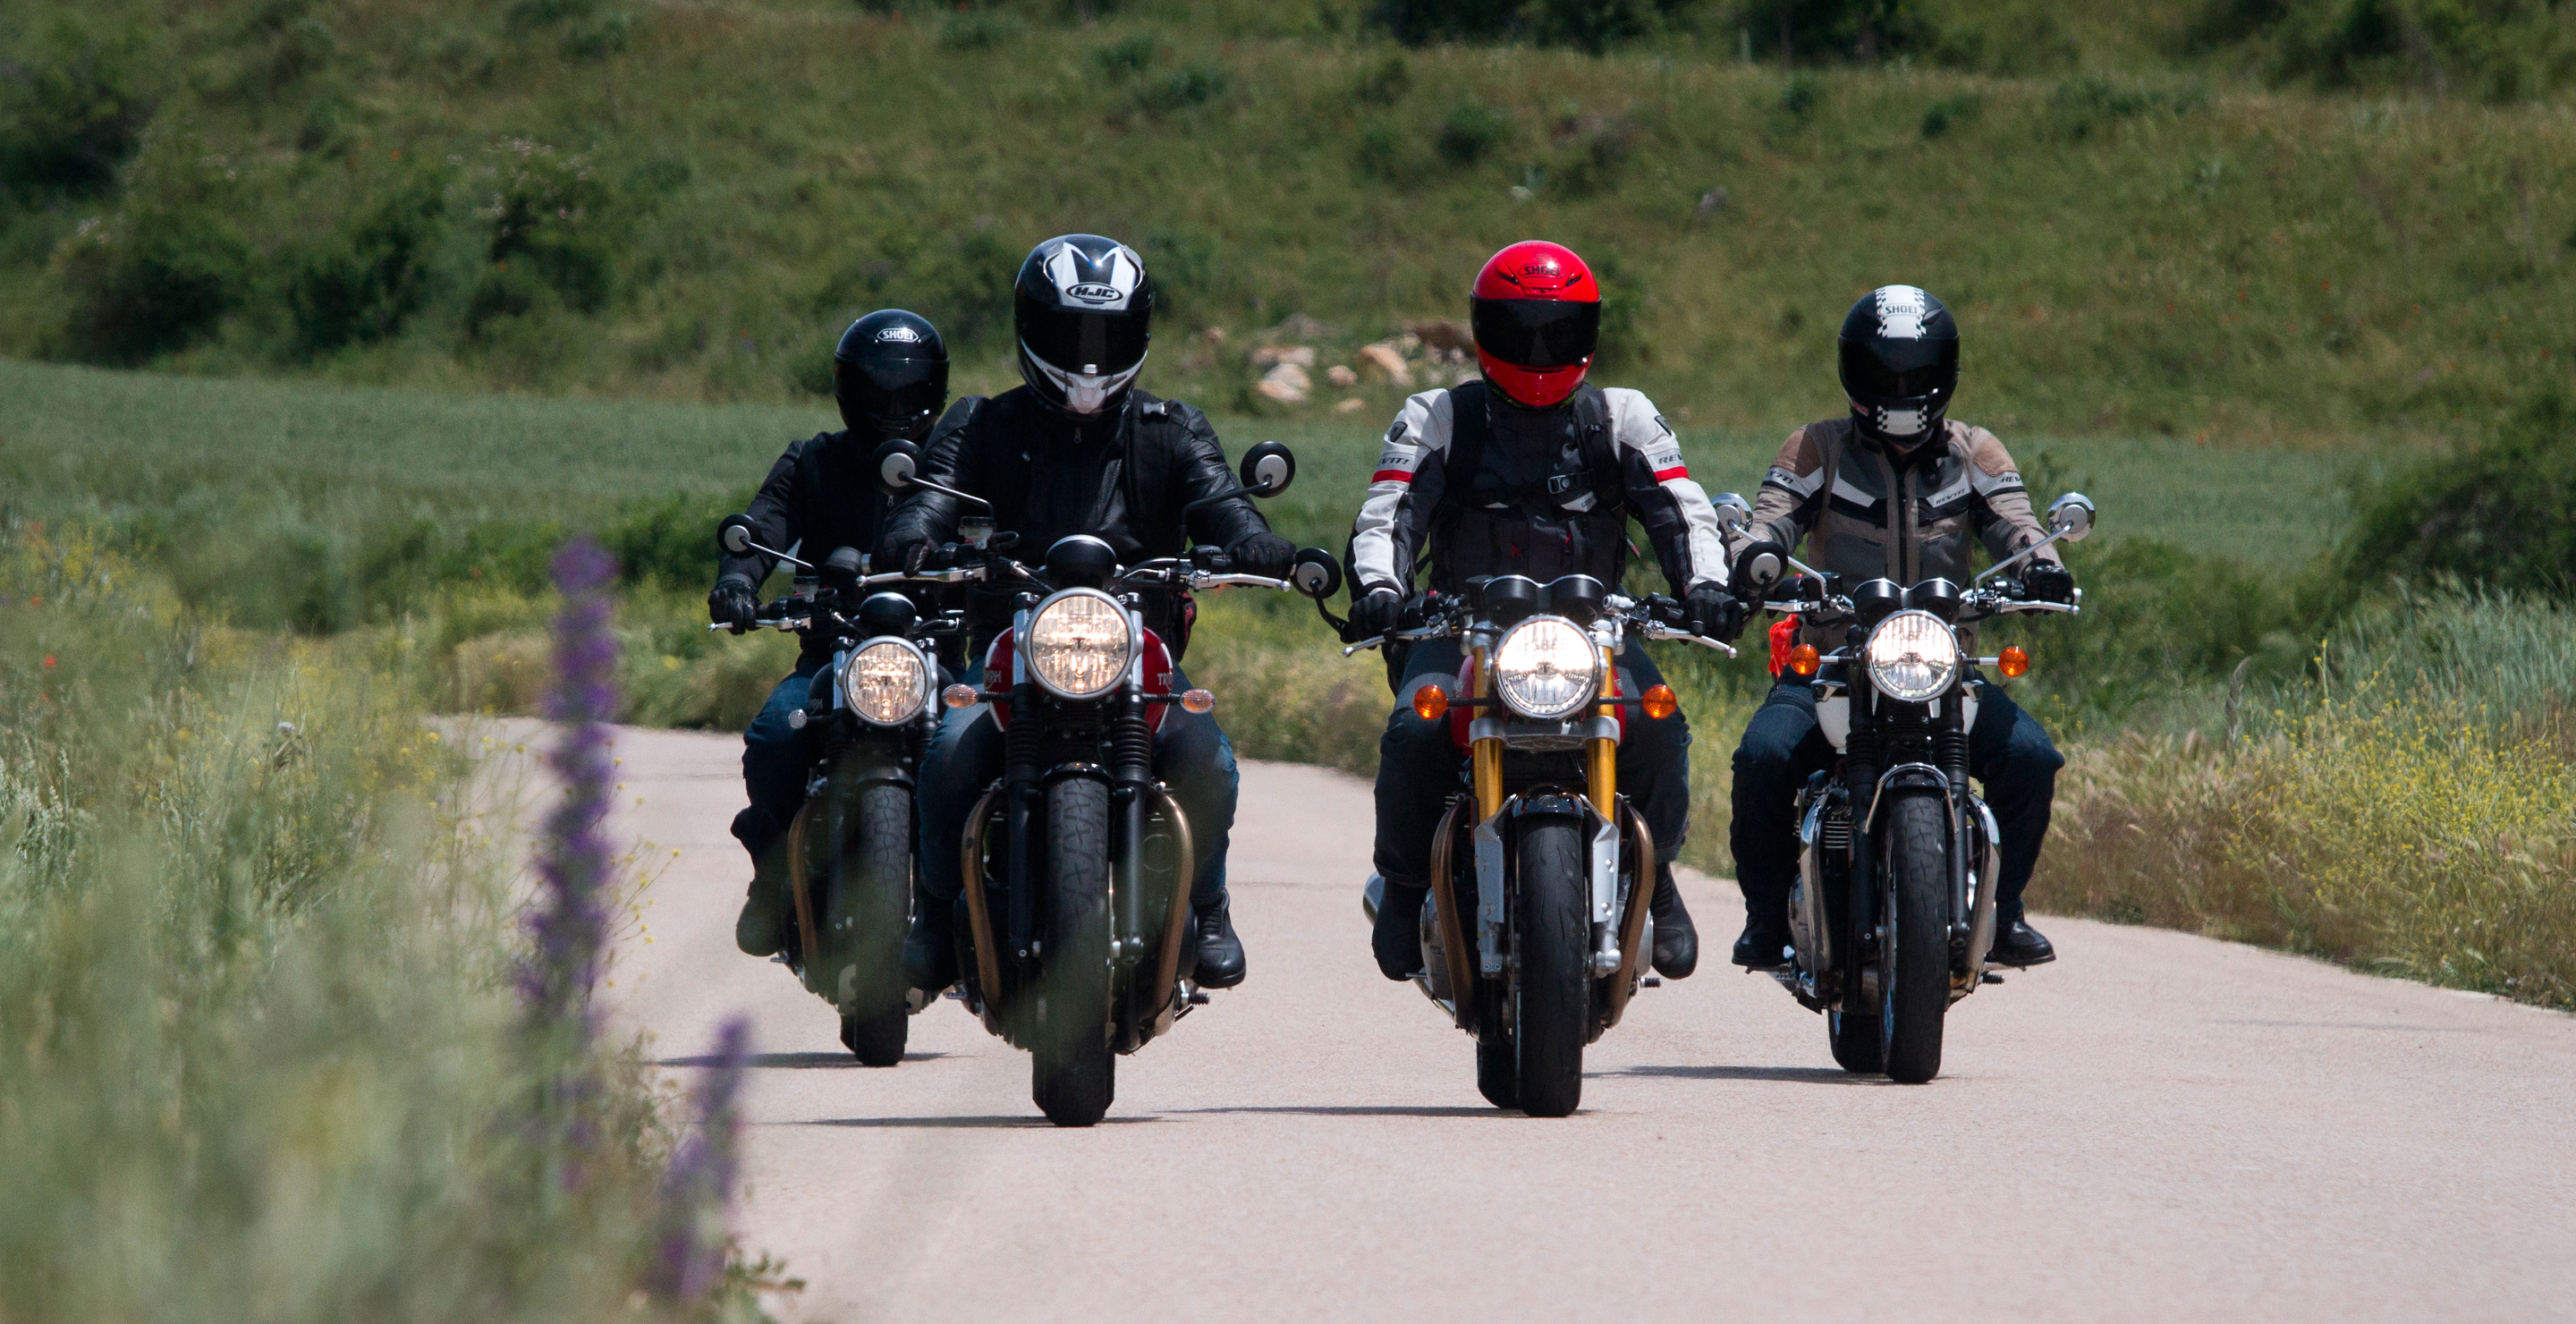 Motos Triumph en marcha de ruta por una carretera y fondo de campo